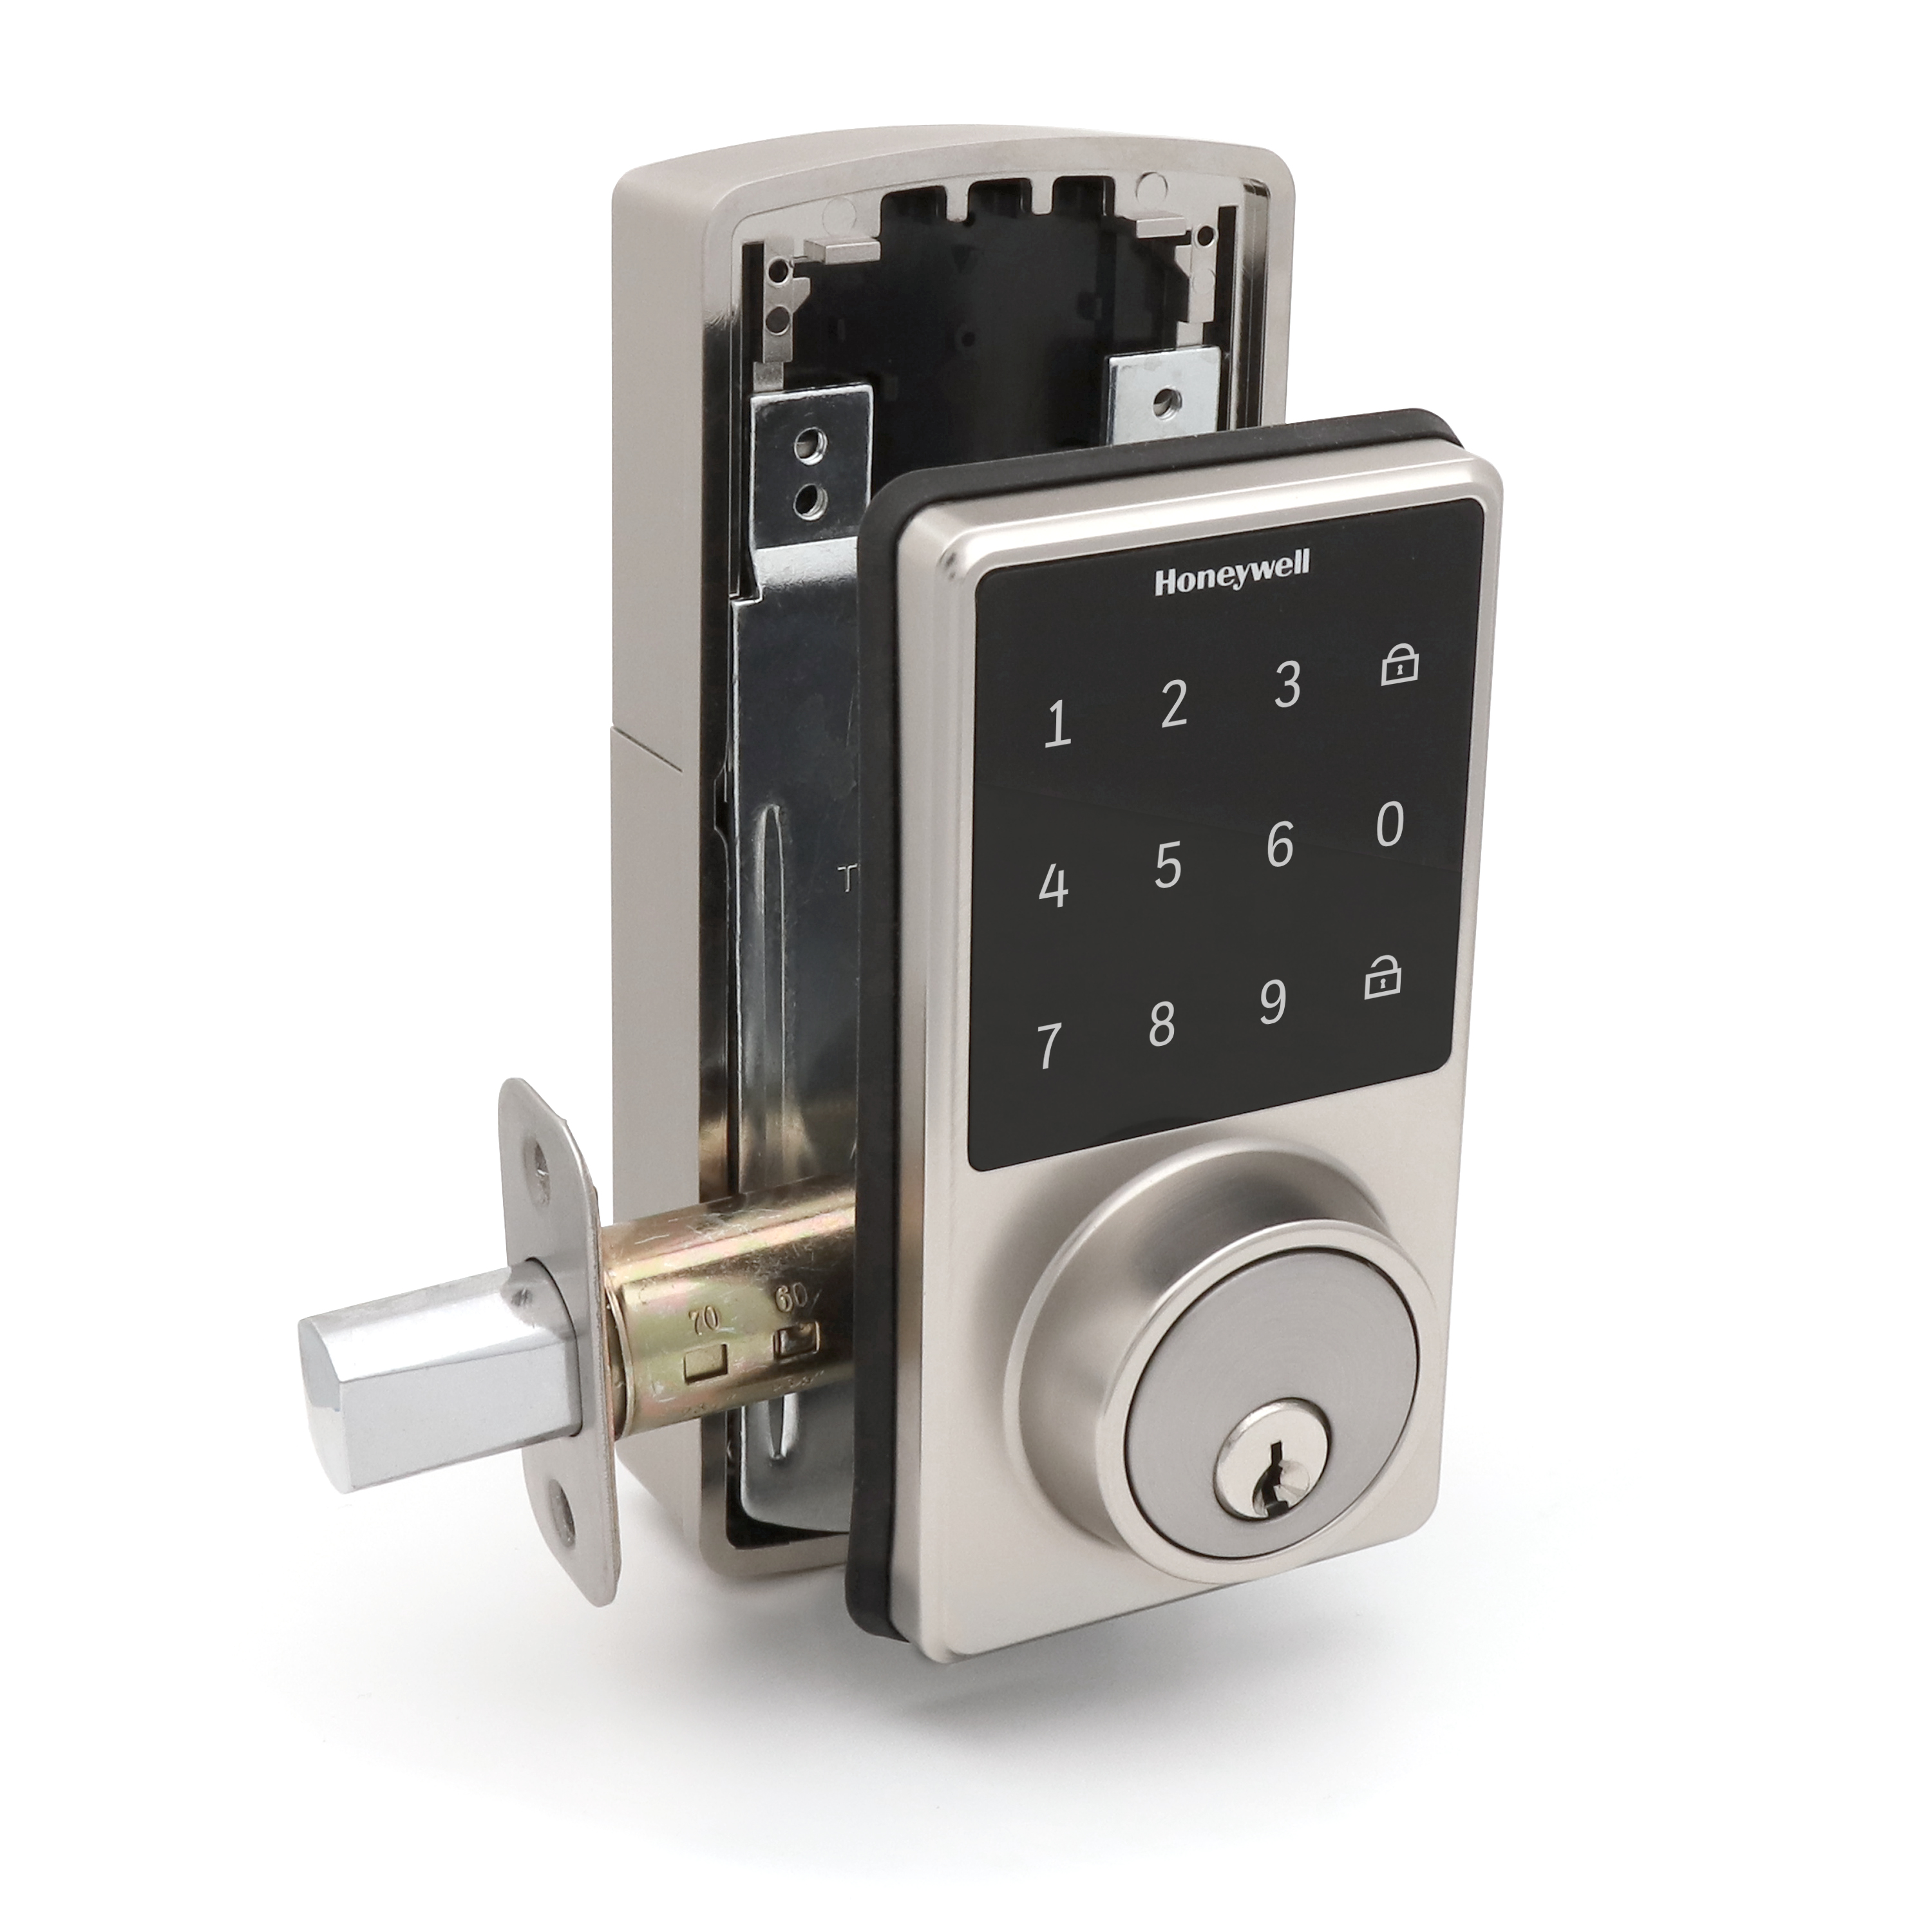 Honeywell Door Locks, Electronic Deadbolt with Touchscreen in Satin Nickel,  8733500